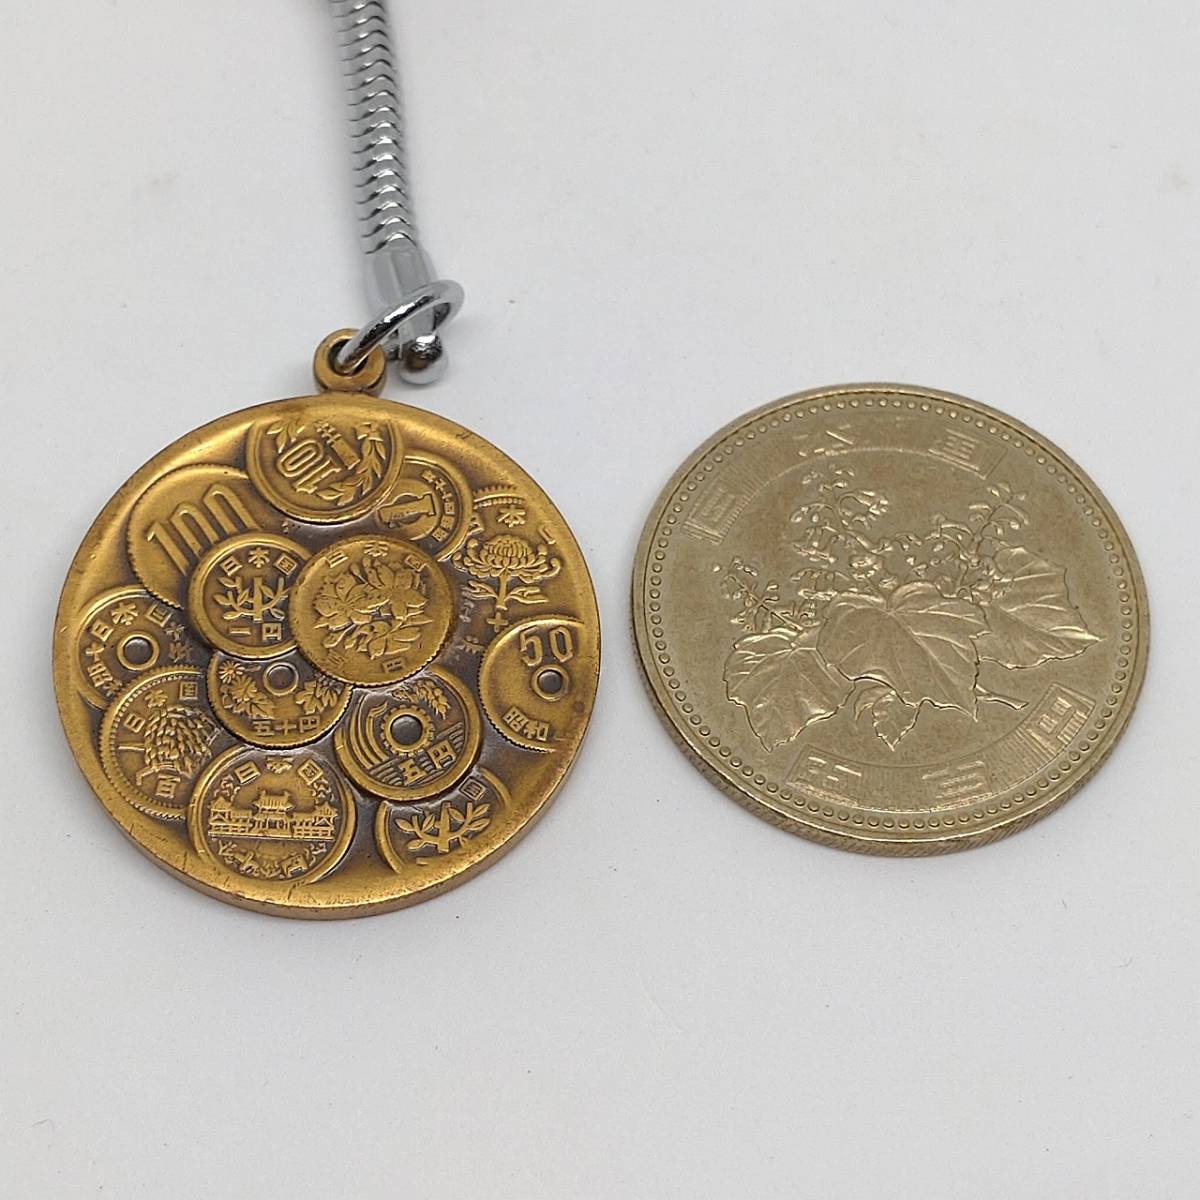 キーホルダー 硬貨の模様 造幣局 日本土産 【3999】の画像5